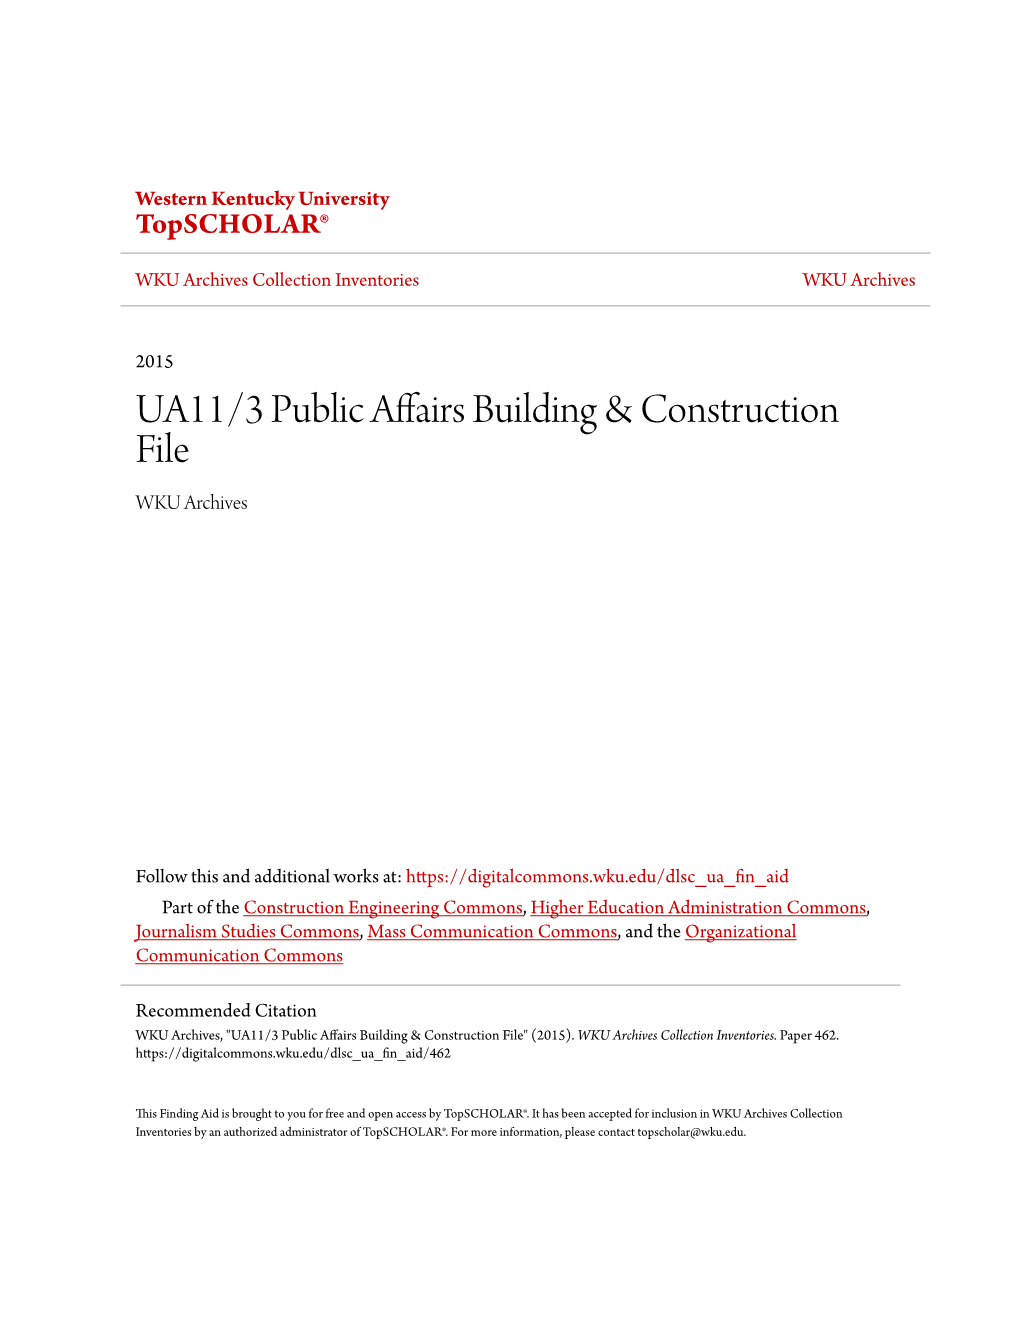 UA11/3 Public Affairs Building & Construction File